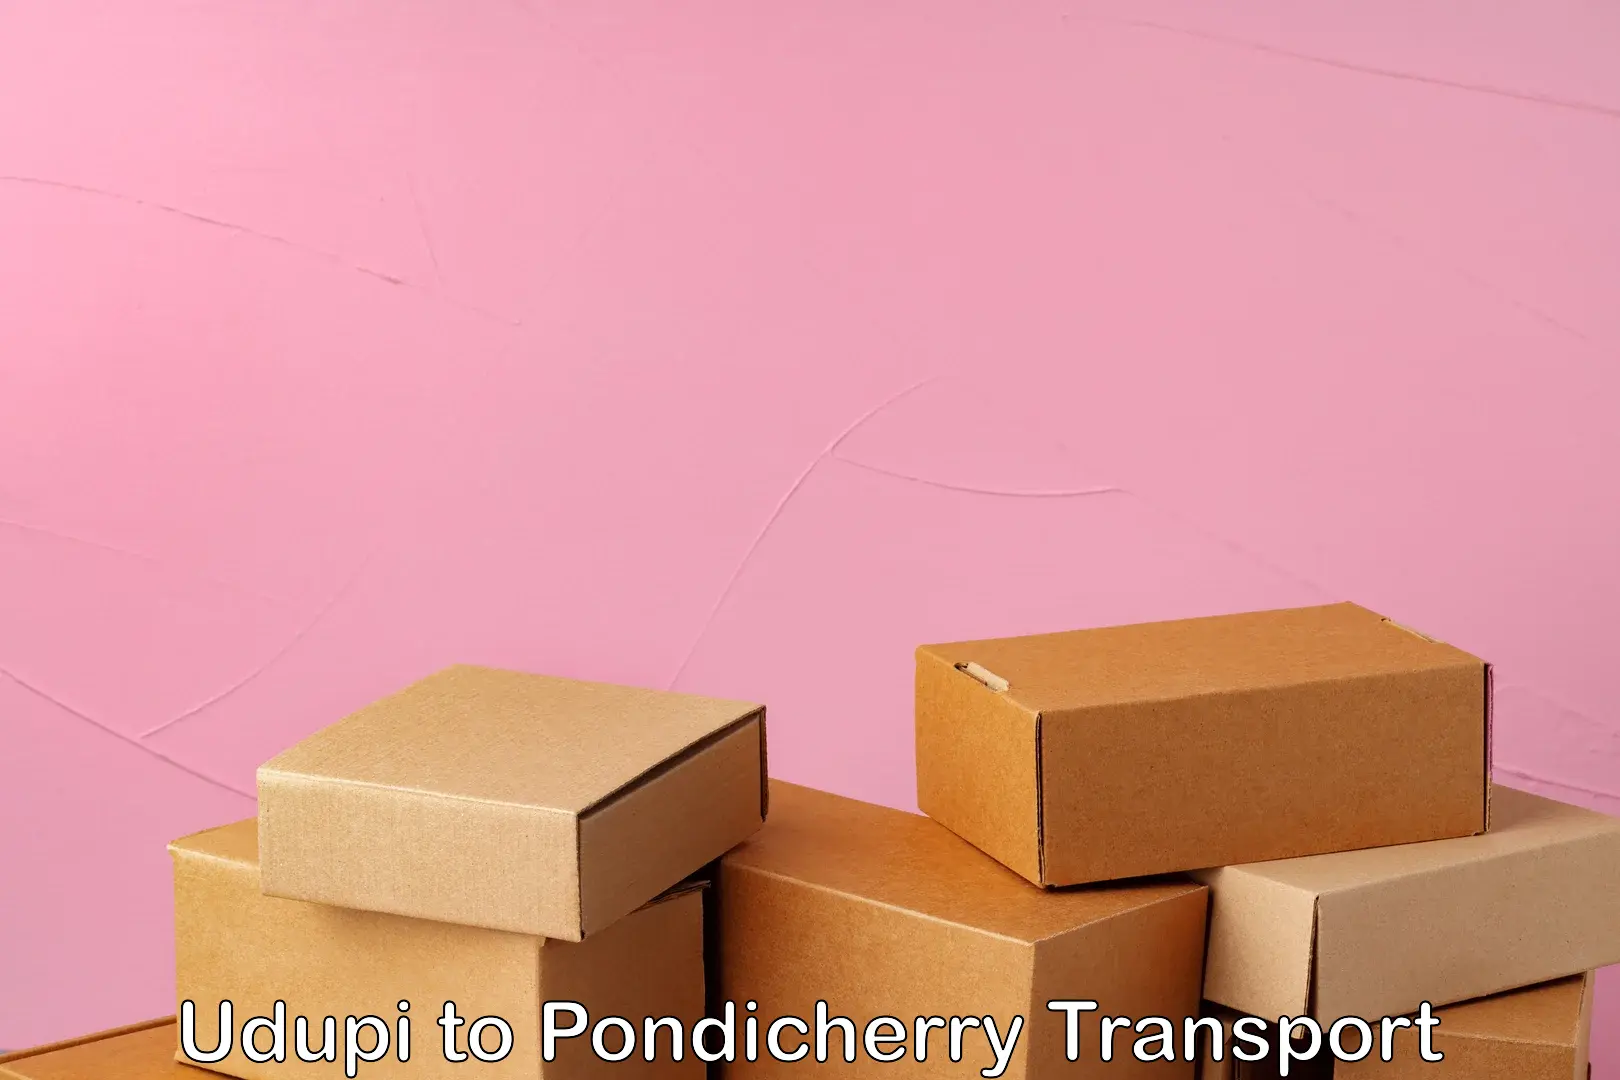 Online transport service Udupi to Pondicherry University